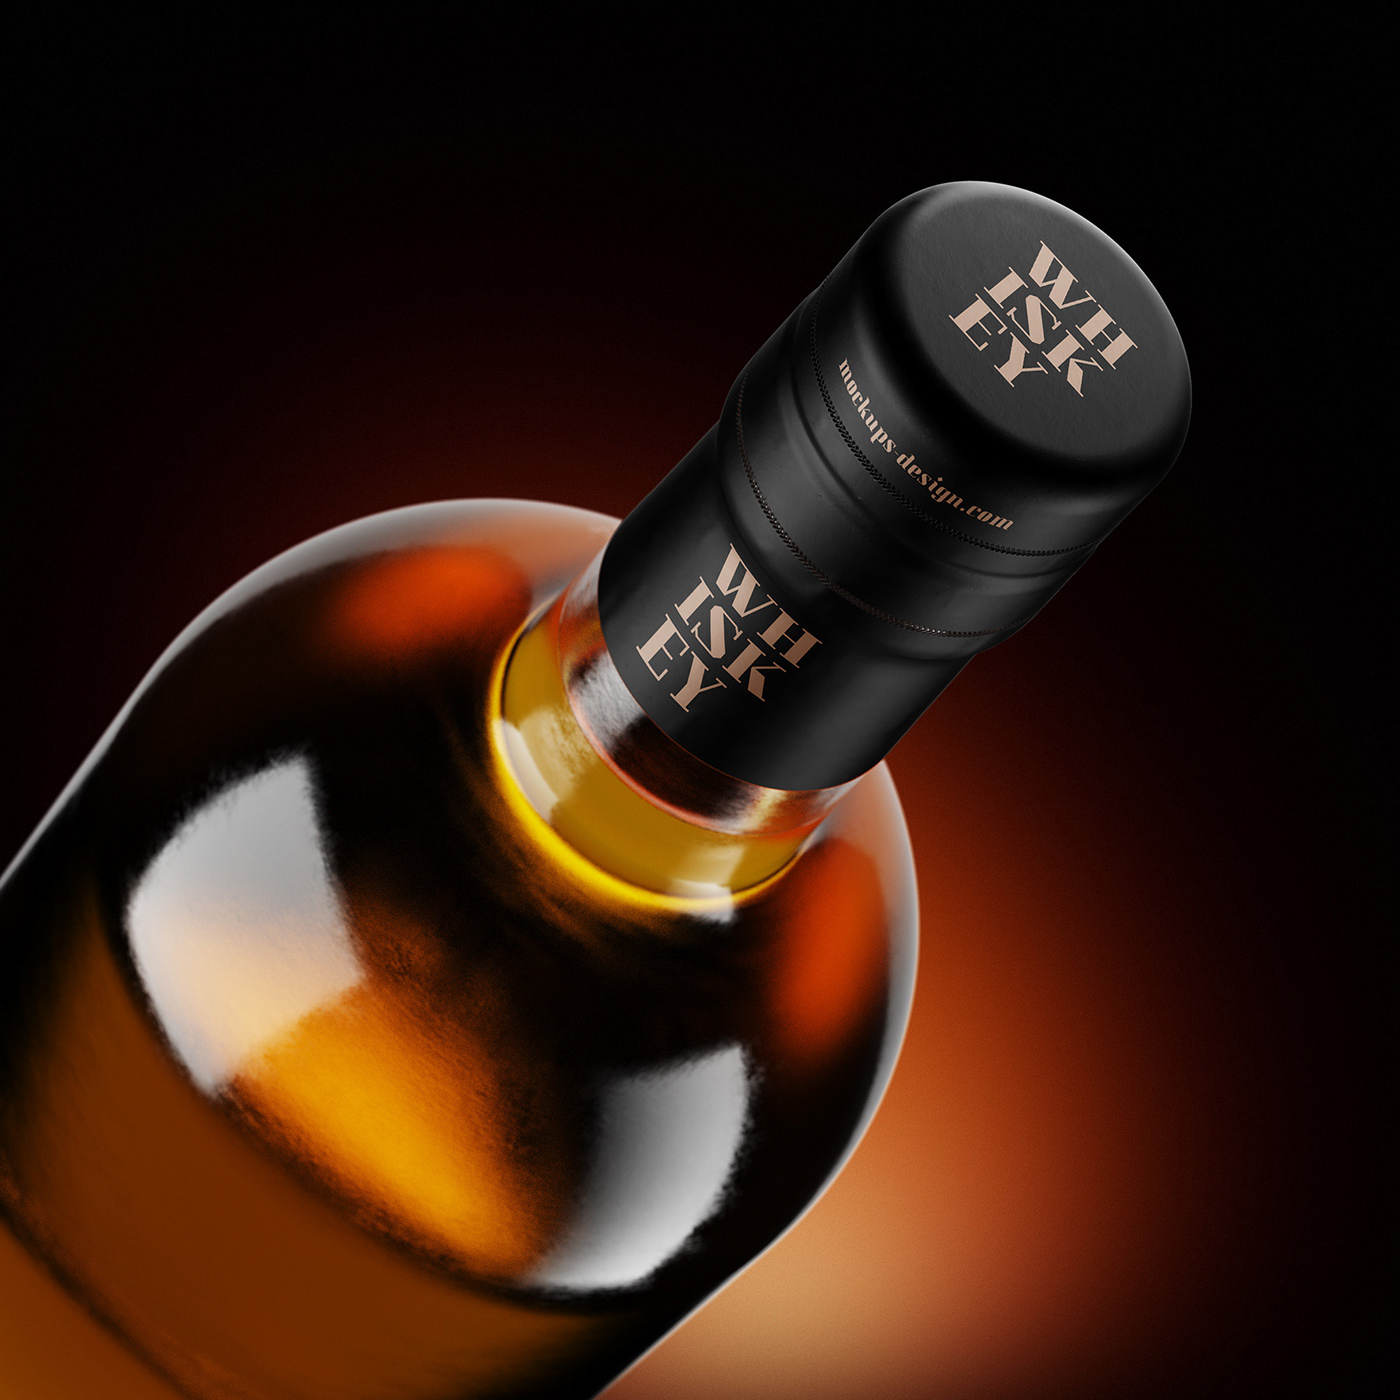 Download Free whisky bottle mockup on Behance